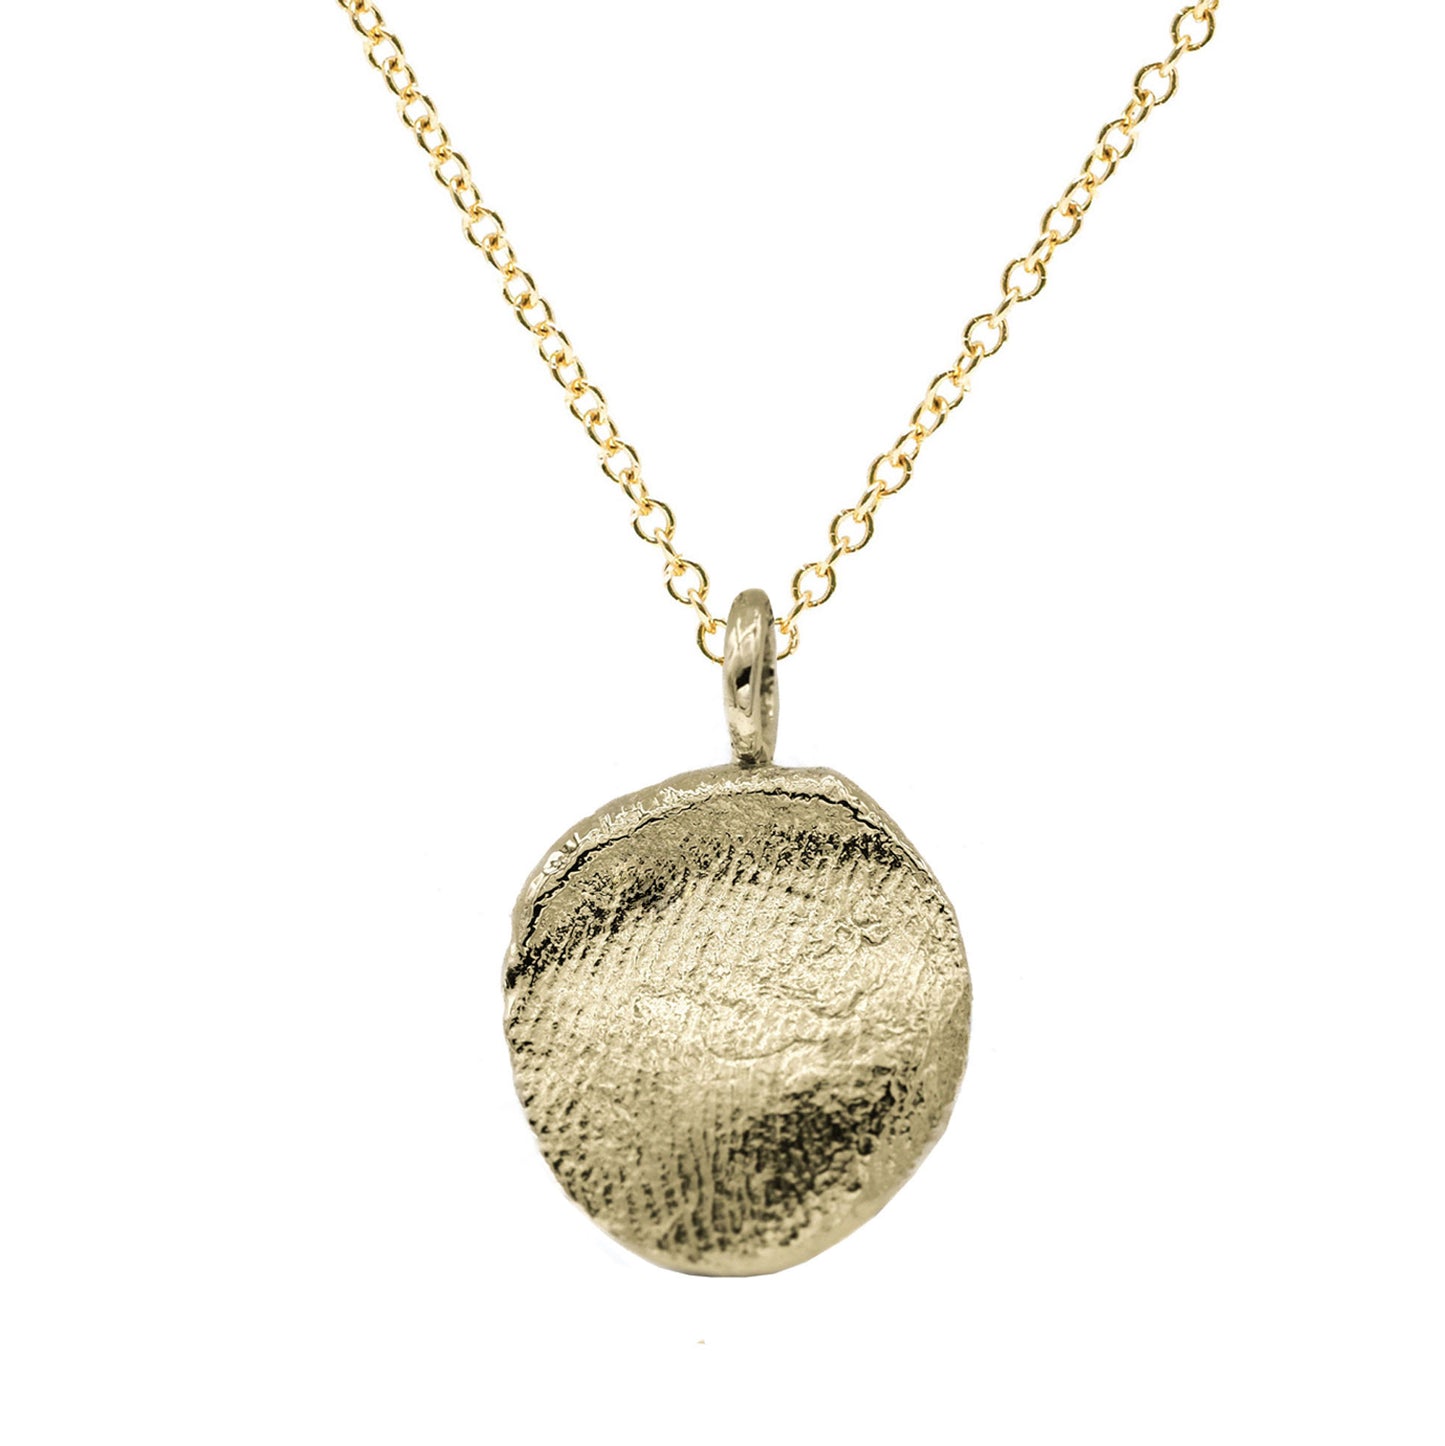 Fingerprint Necklace in solid gold